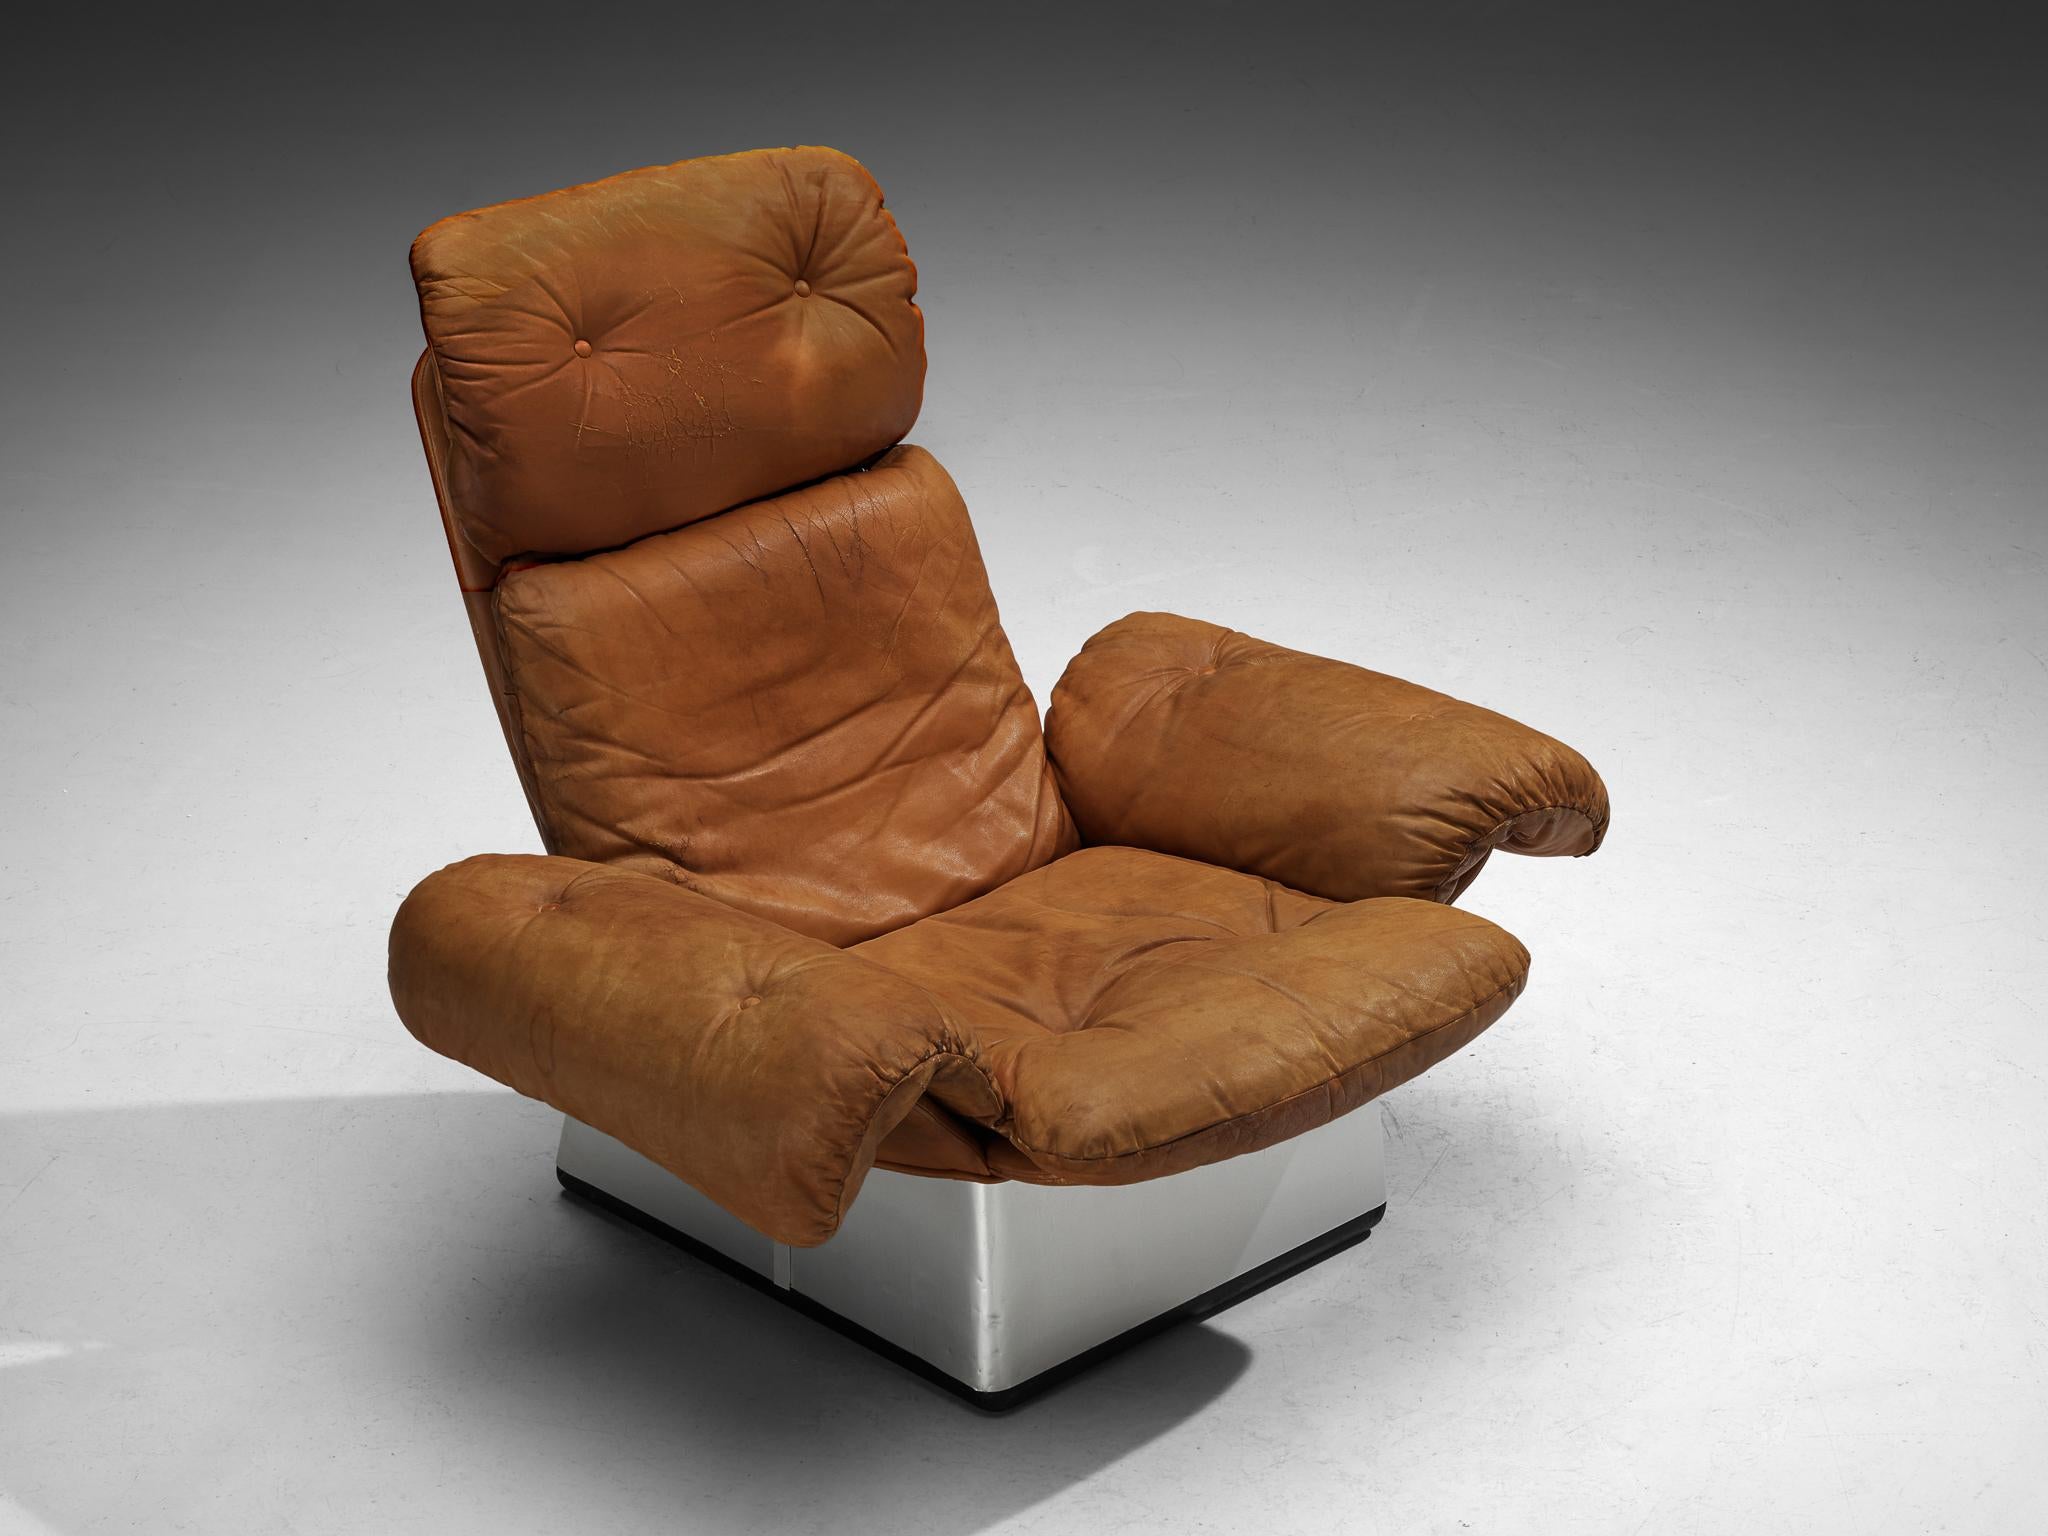 Chaise longue, cuir, aluminium, Italie 1970

Chaise longue fabriquée en Italie dans les années 1970. Cette chaise représente fortement l'essence du Design/One des années 1970, allant au-delà des conventions strictes du modernisme, avec l'exploration